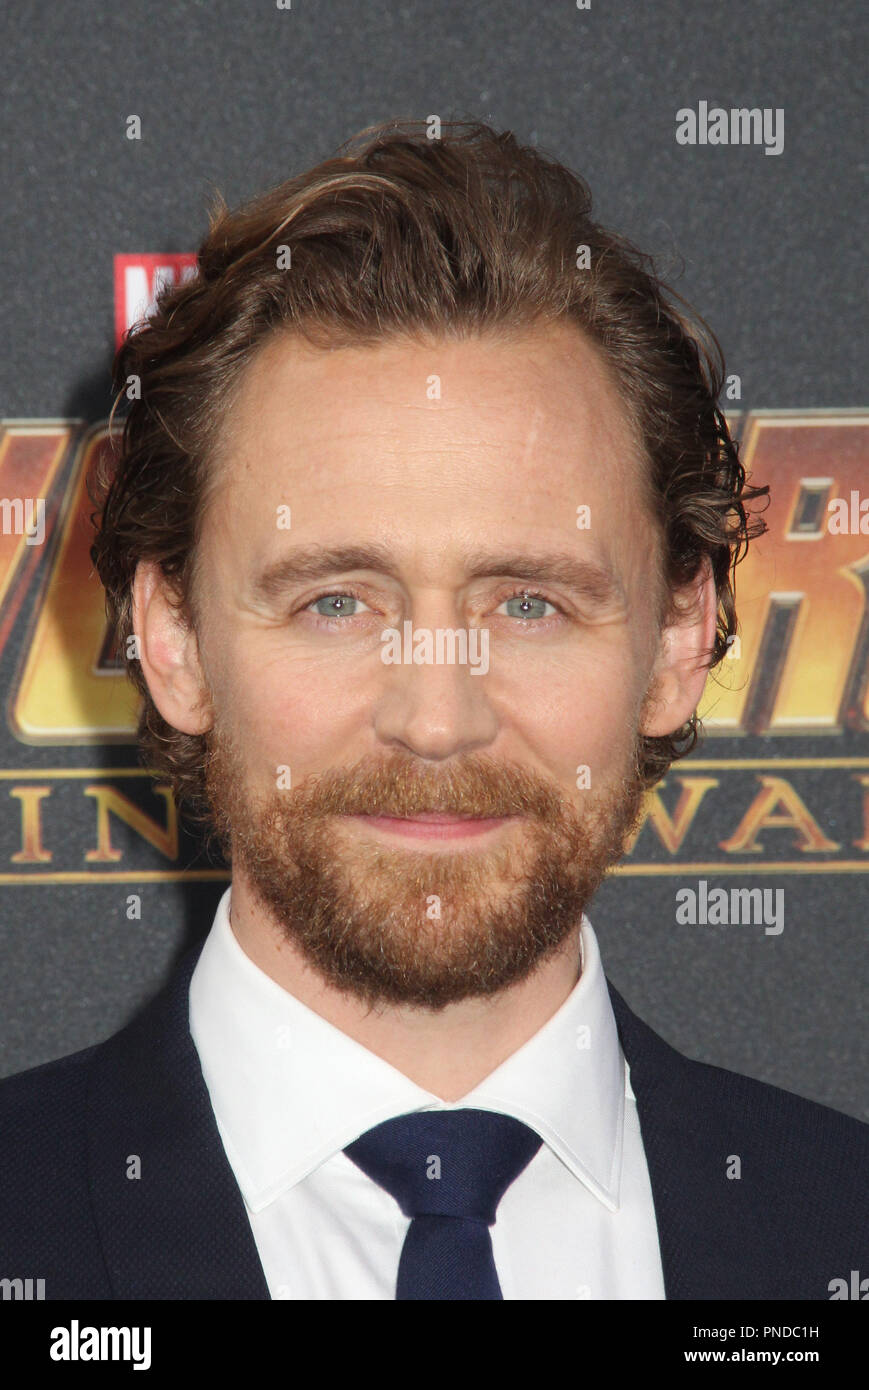 Tom Hiddleston 23/04/2018 La première mondiale de "Avengers : l'infini la guerre" s'est tenue à Hollywood, CA Photo par Izumi Hasegawa / HNW / PictureLux Banque D'Images